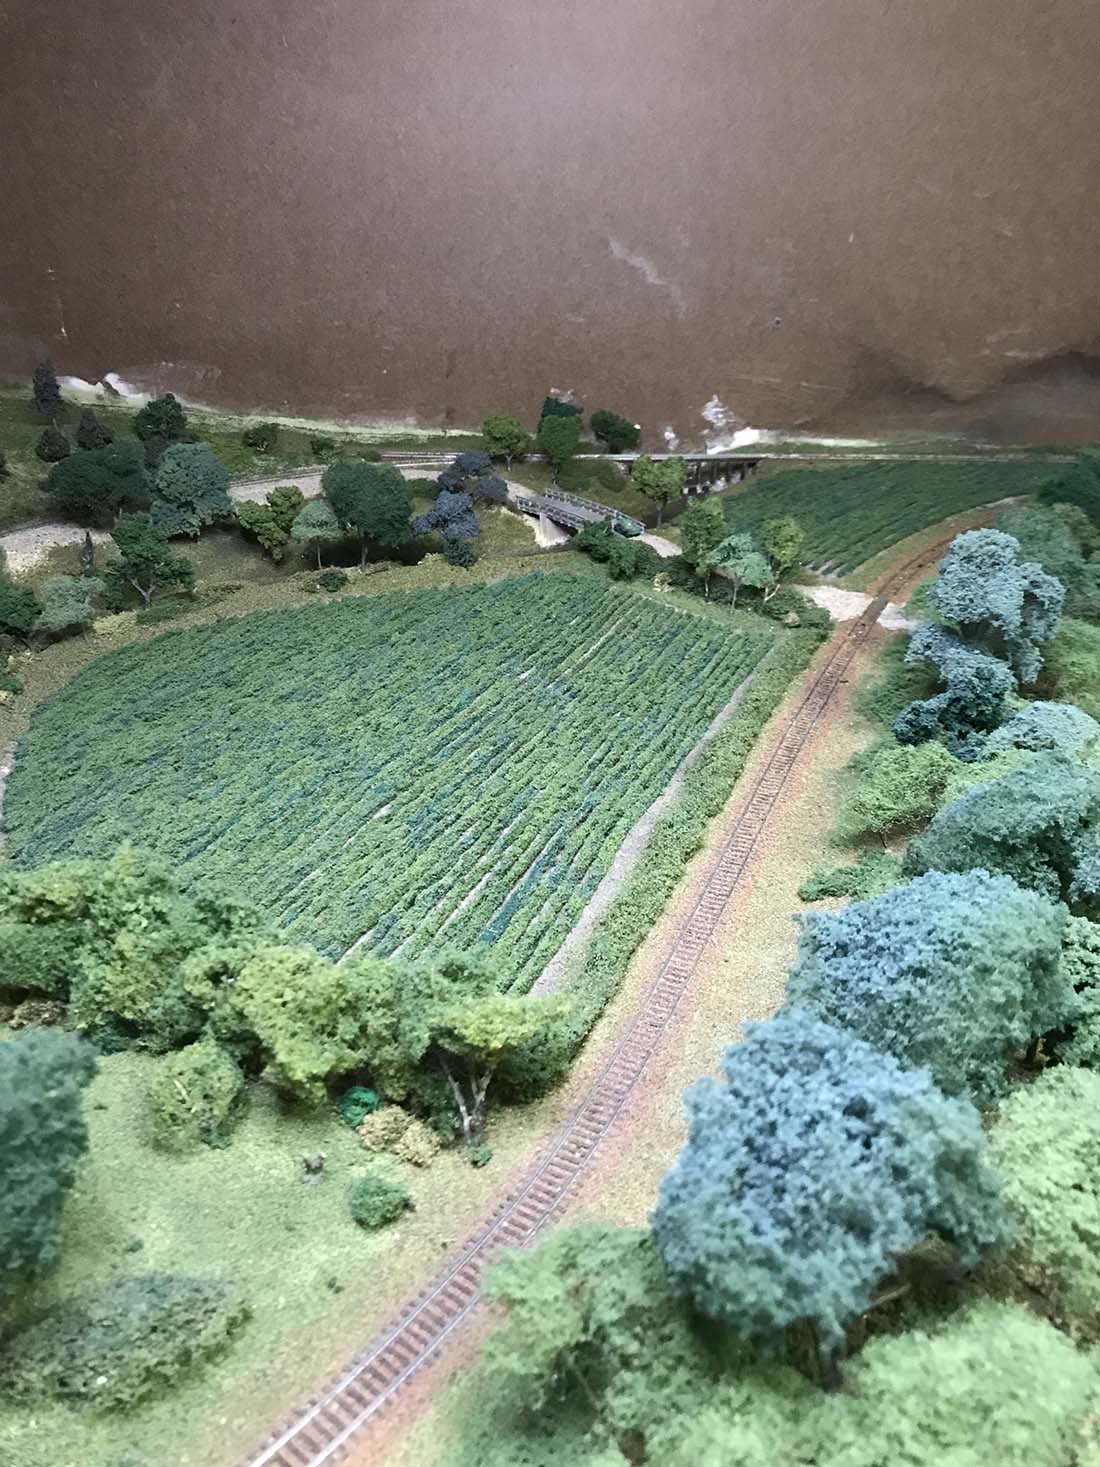 model railroad cornfield